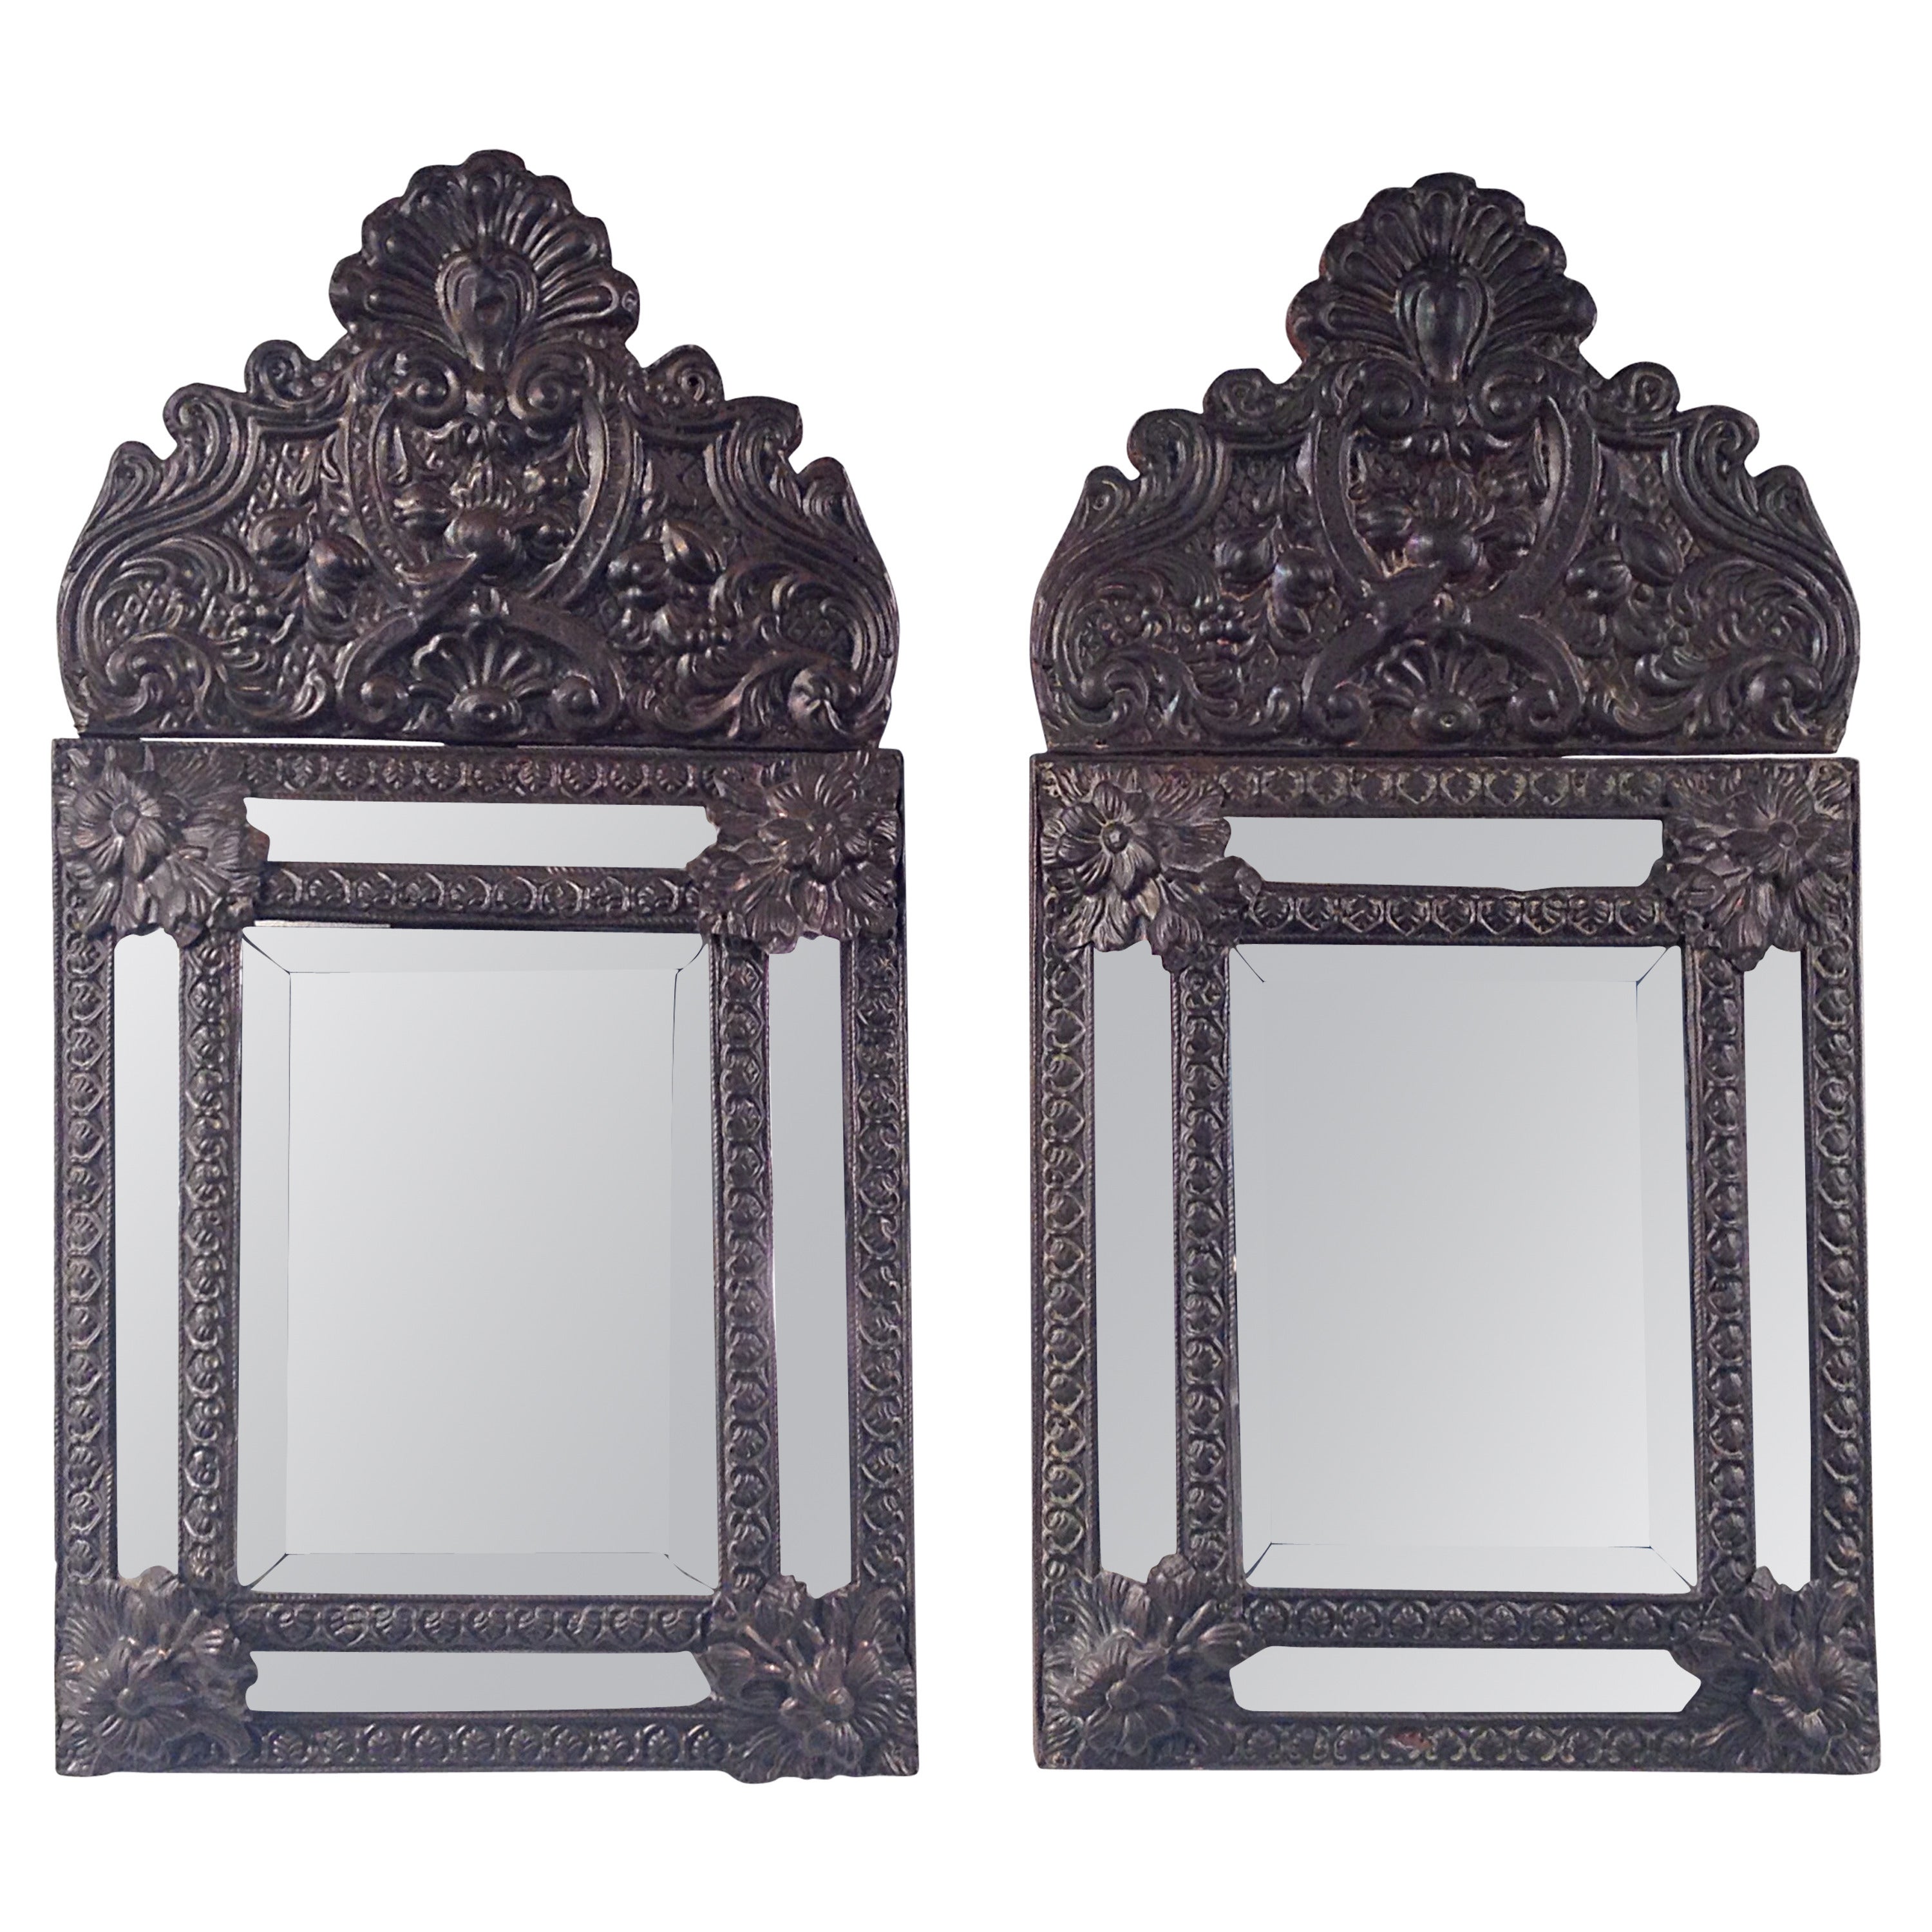 Pair of Flemish Repoussé Cushion Mirrors, Belgium, 19th Century